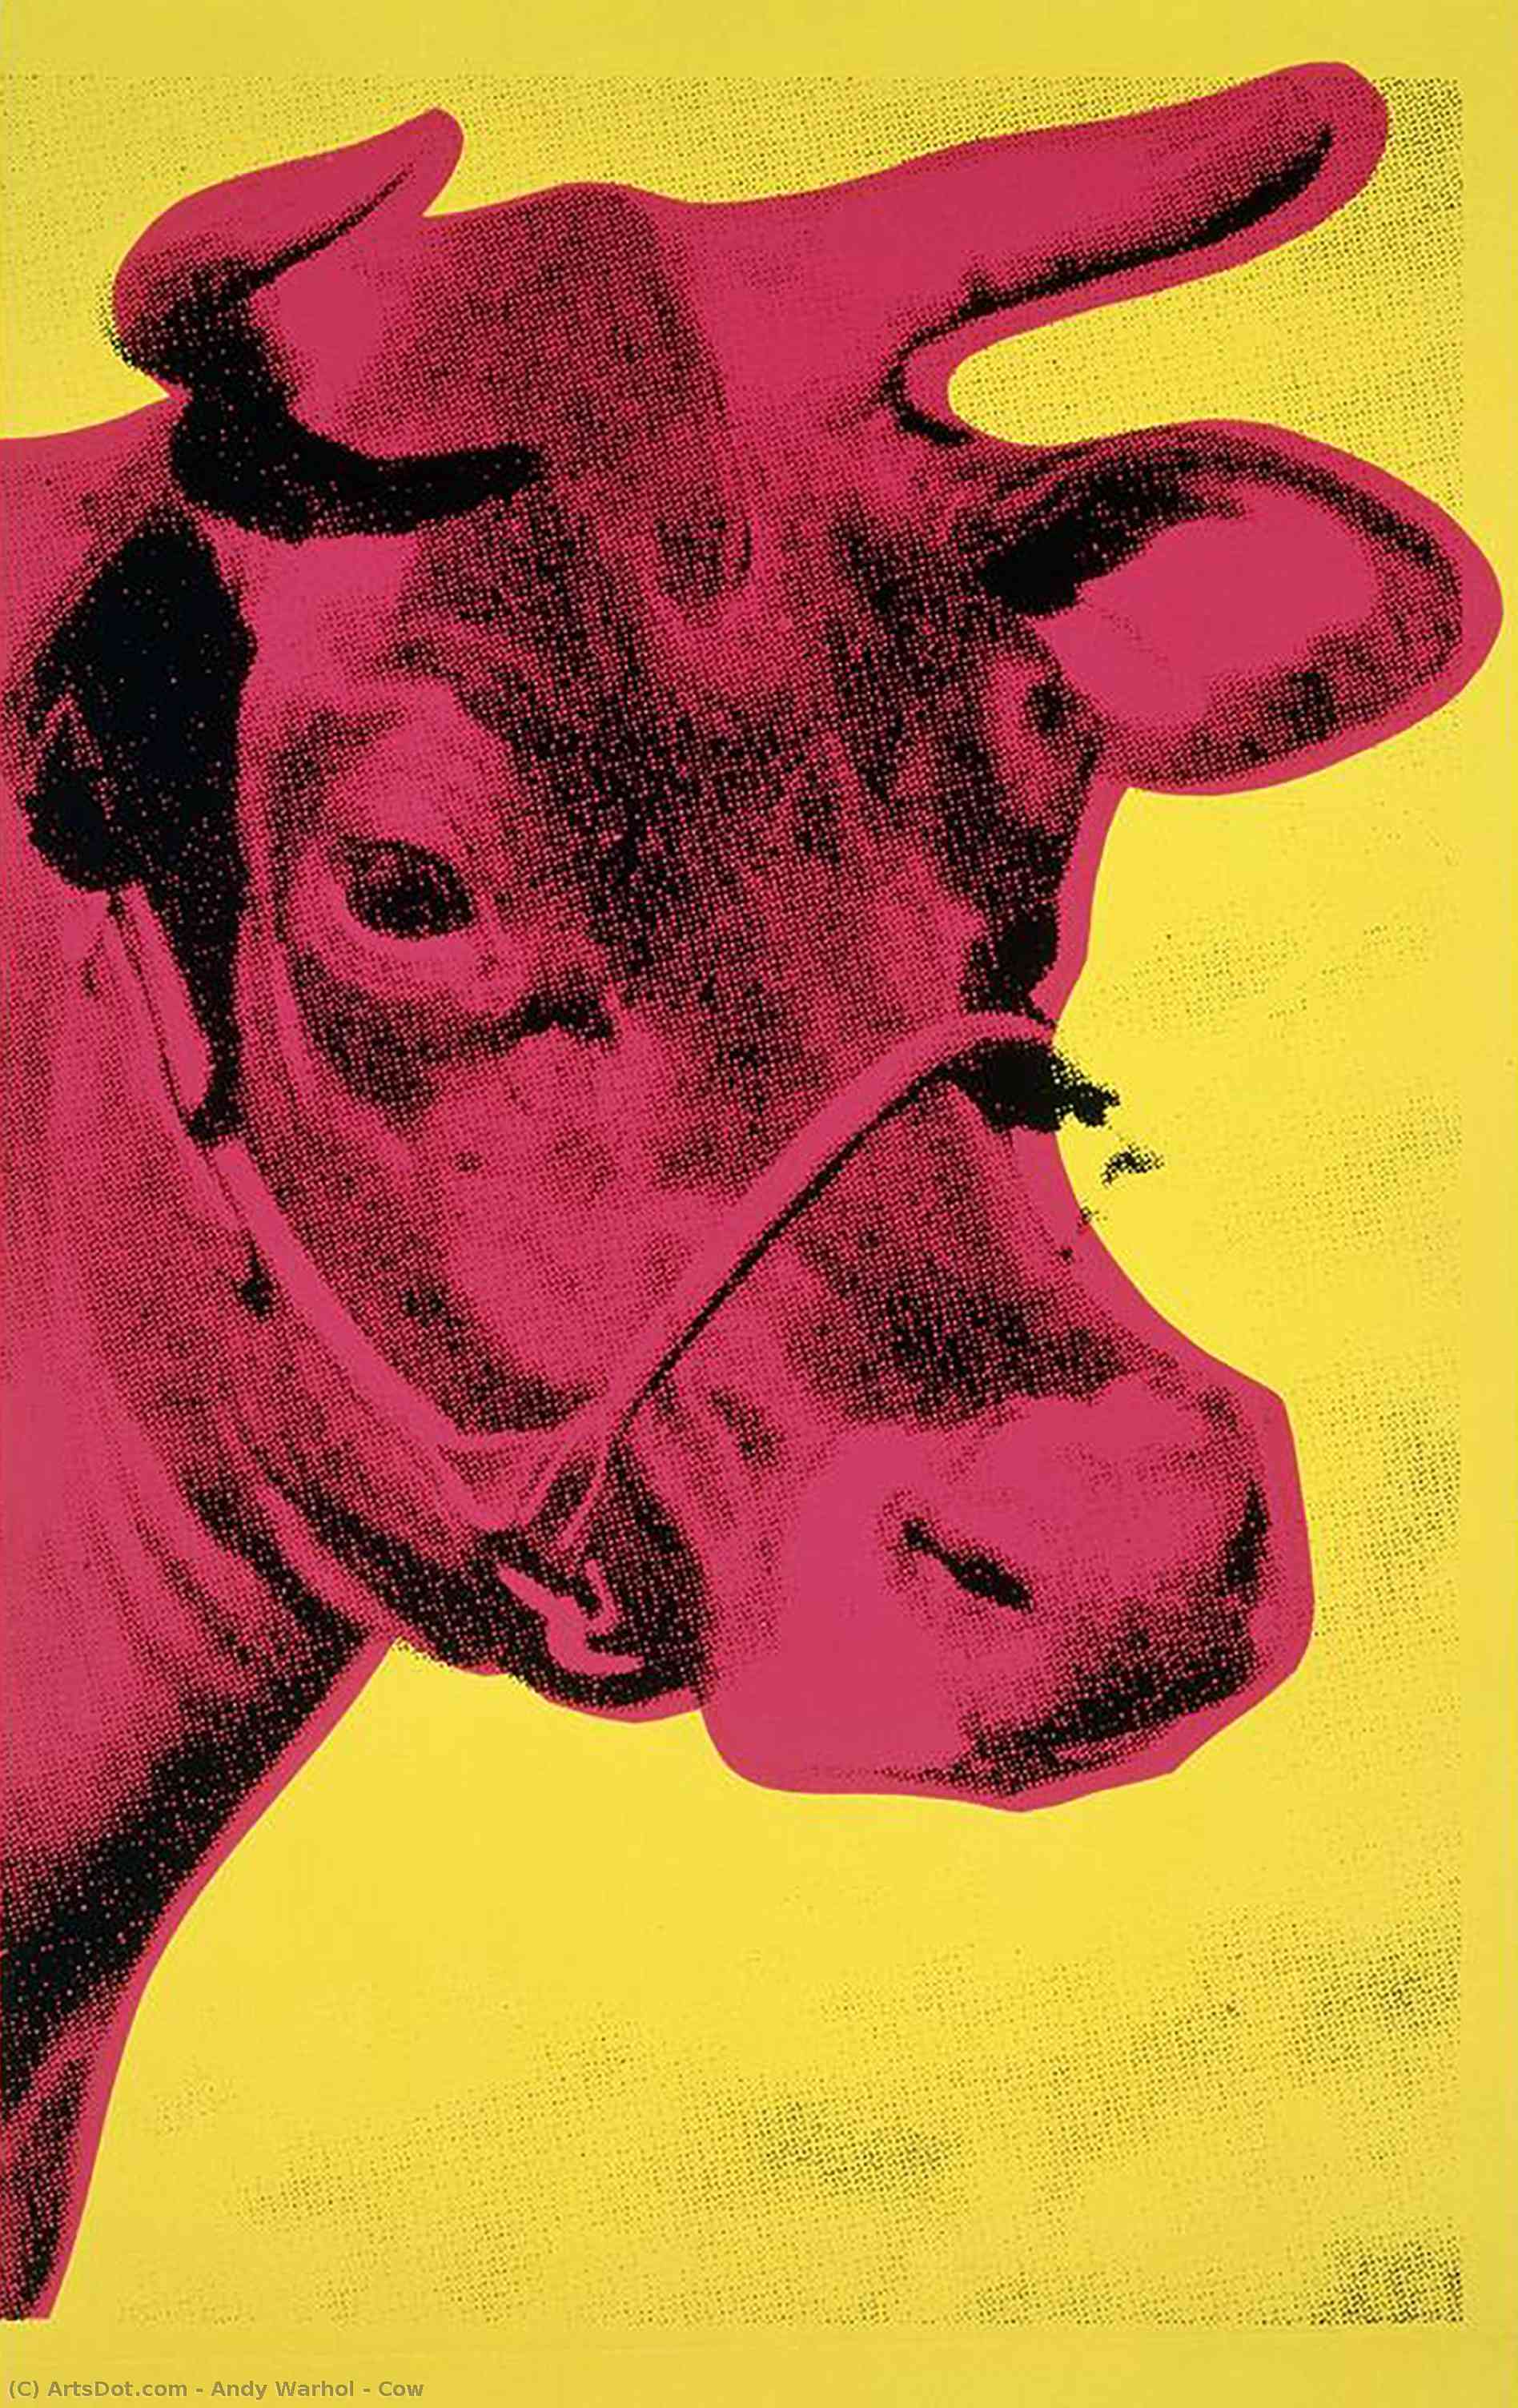 WikiOO.org - Εγκυκλοπαίδεια Καλών Τεχνών - Ζωγραφική, έργα τέχνης Andy Warhol - Cow